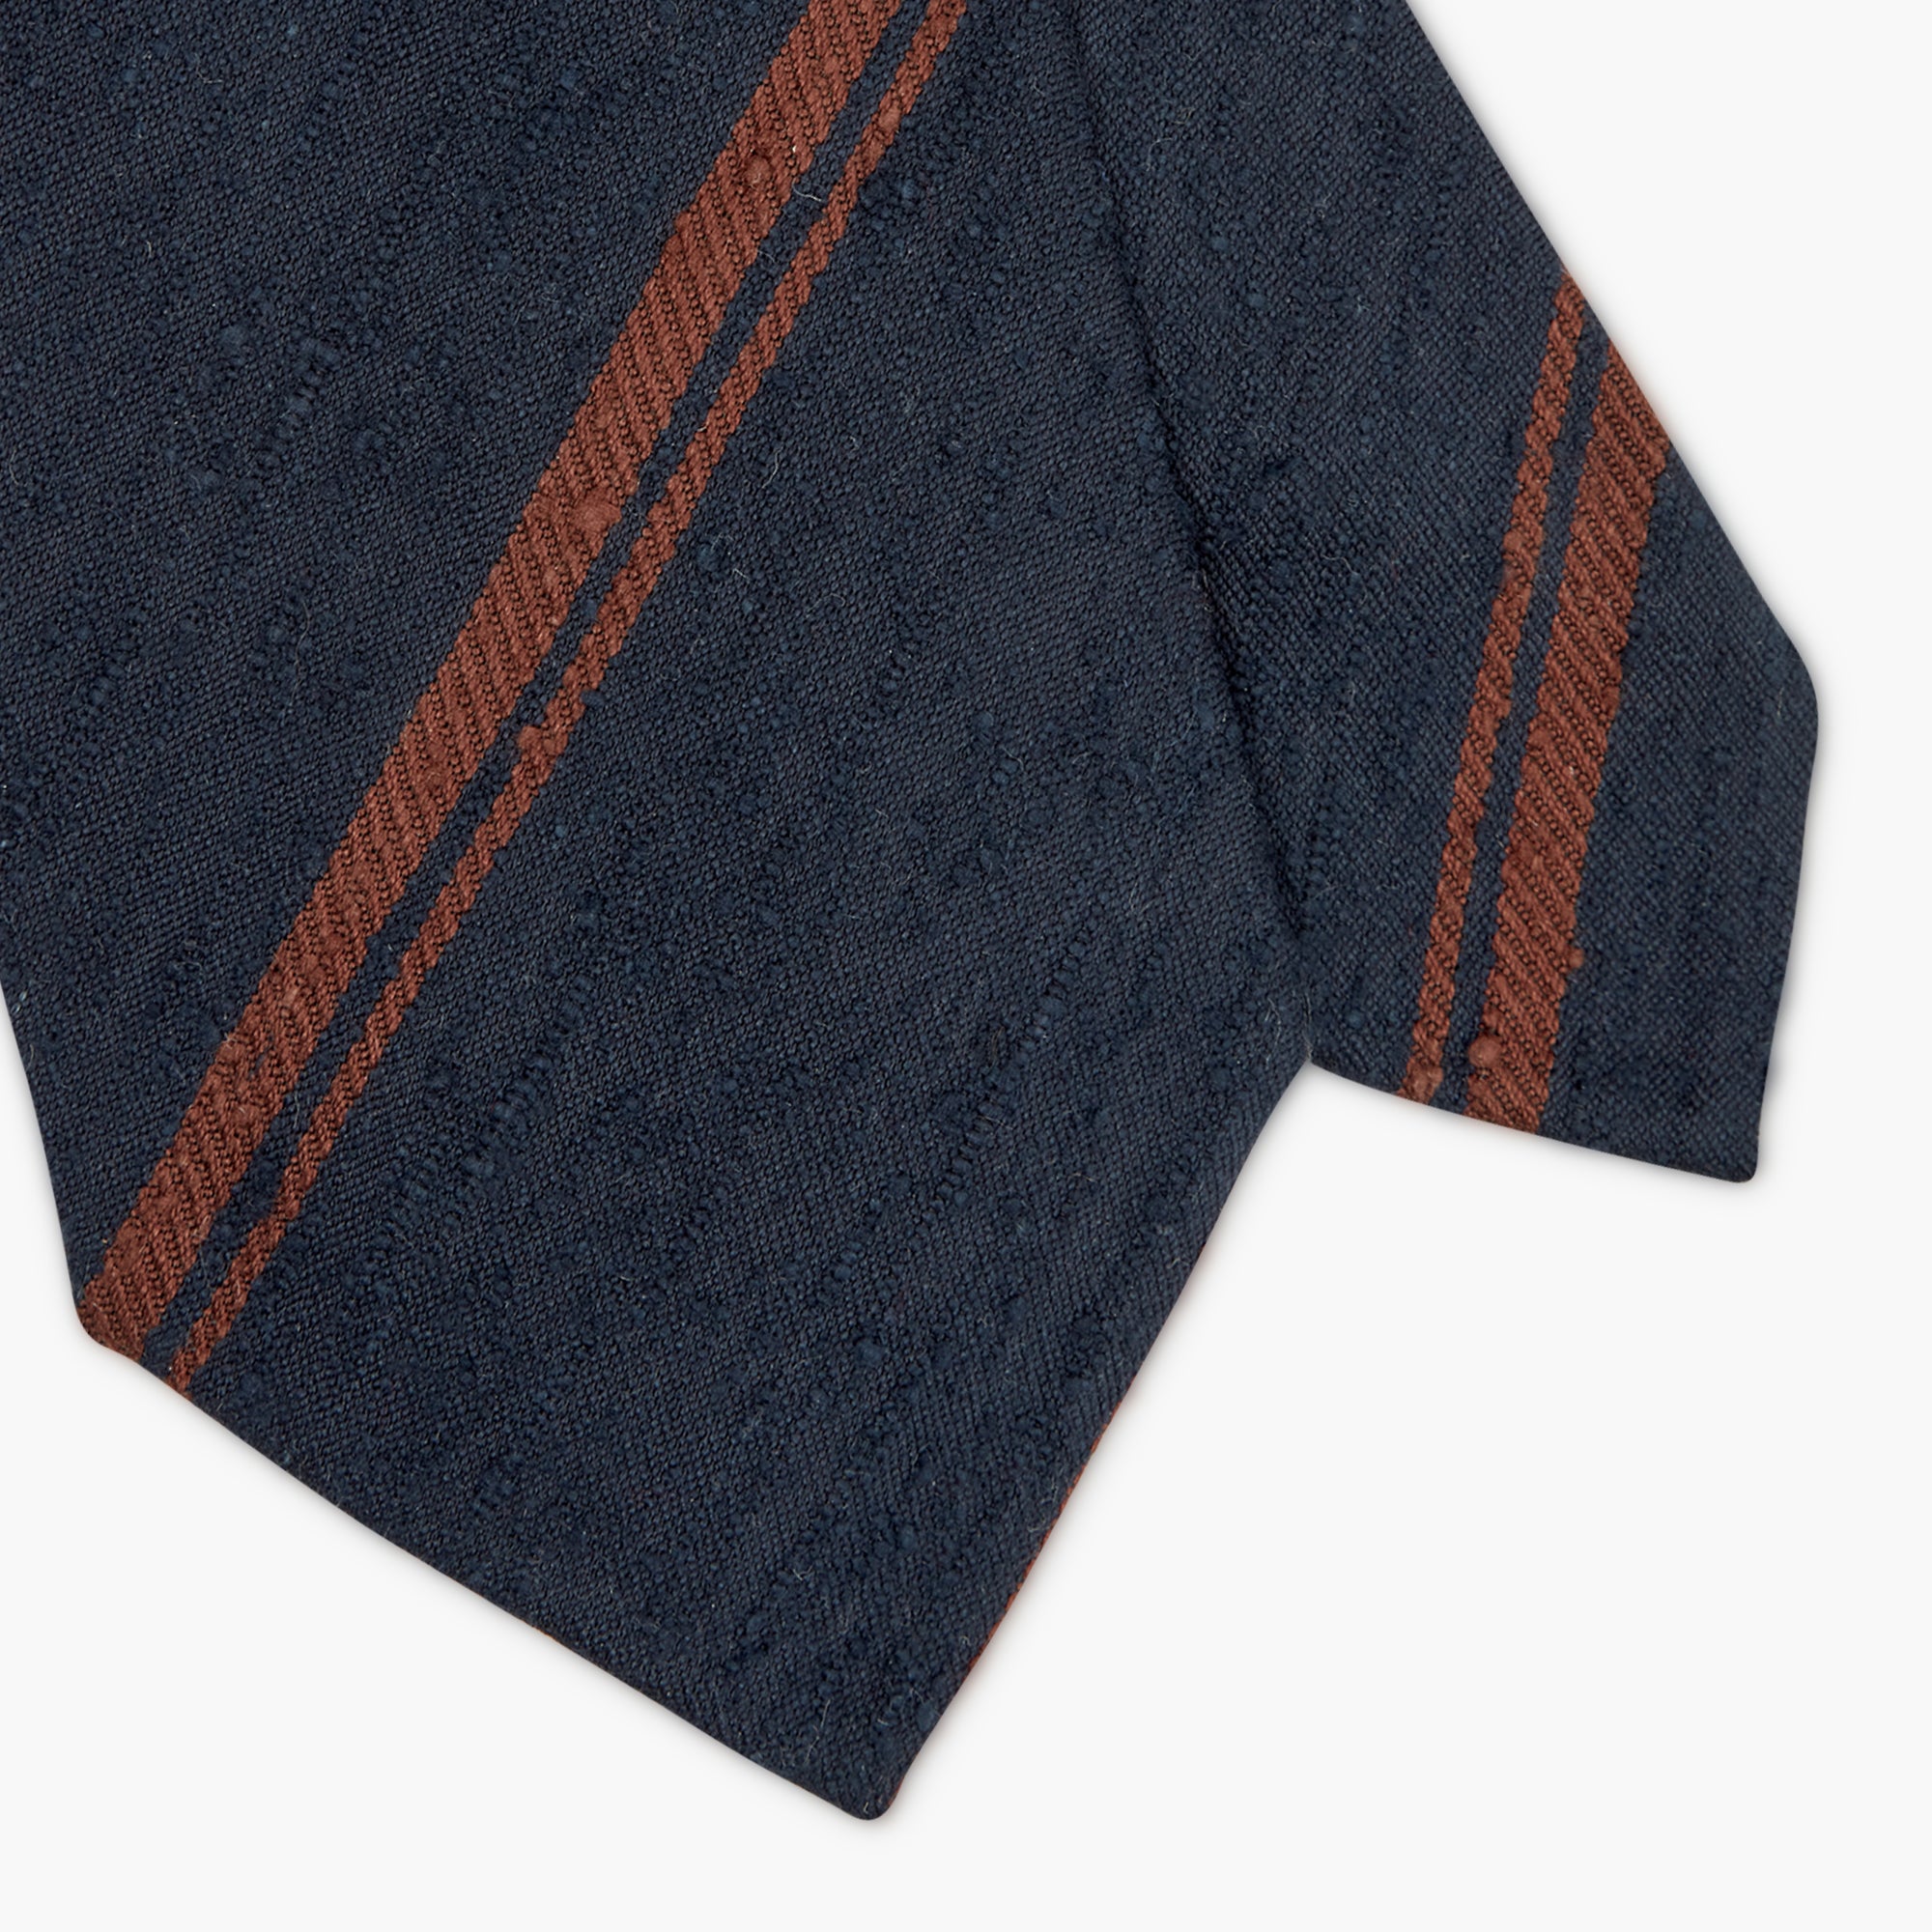 Cravatta 3 Pieghe In Seta Shantung A Righe - Blu Marrone